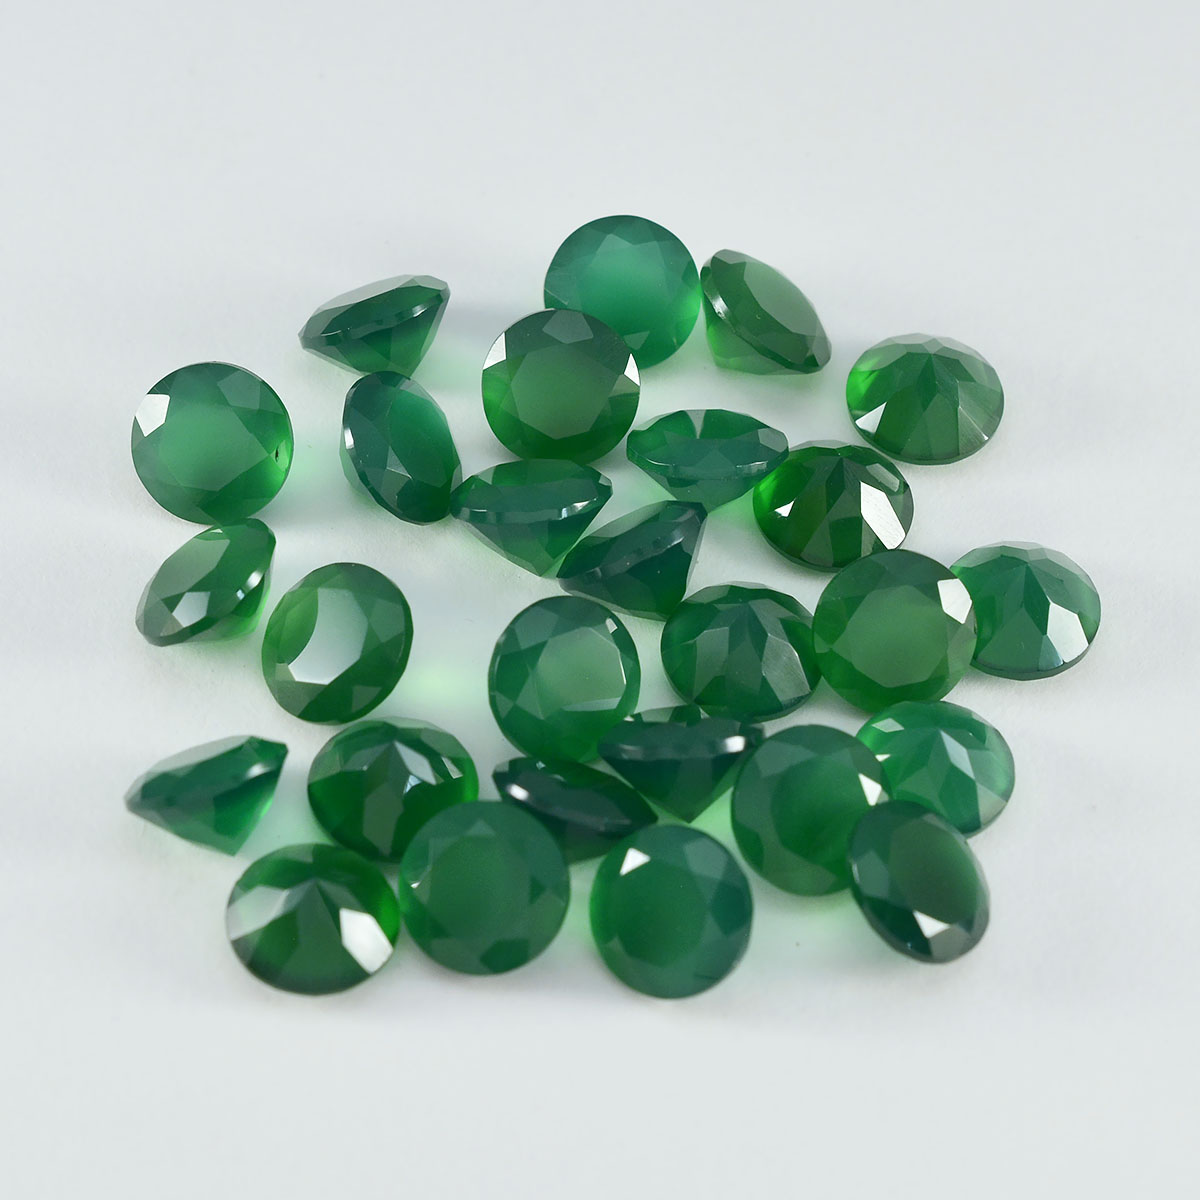 riyogems 1 шт. натуральный зеленый оникс граненый 4x4 мм круглой формы + 1 качественный драгоценный камень